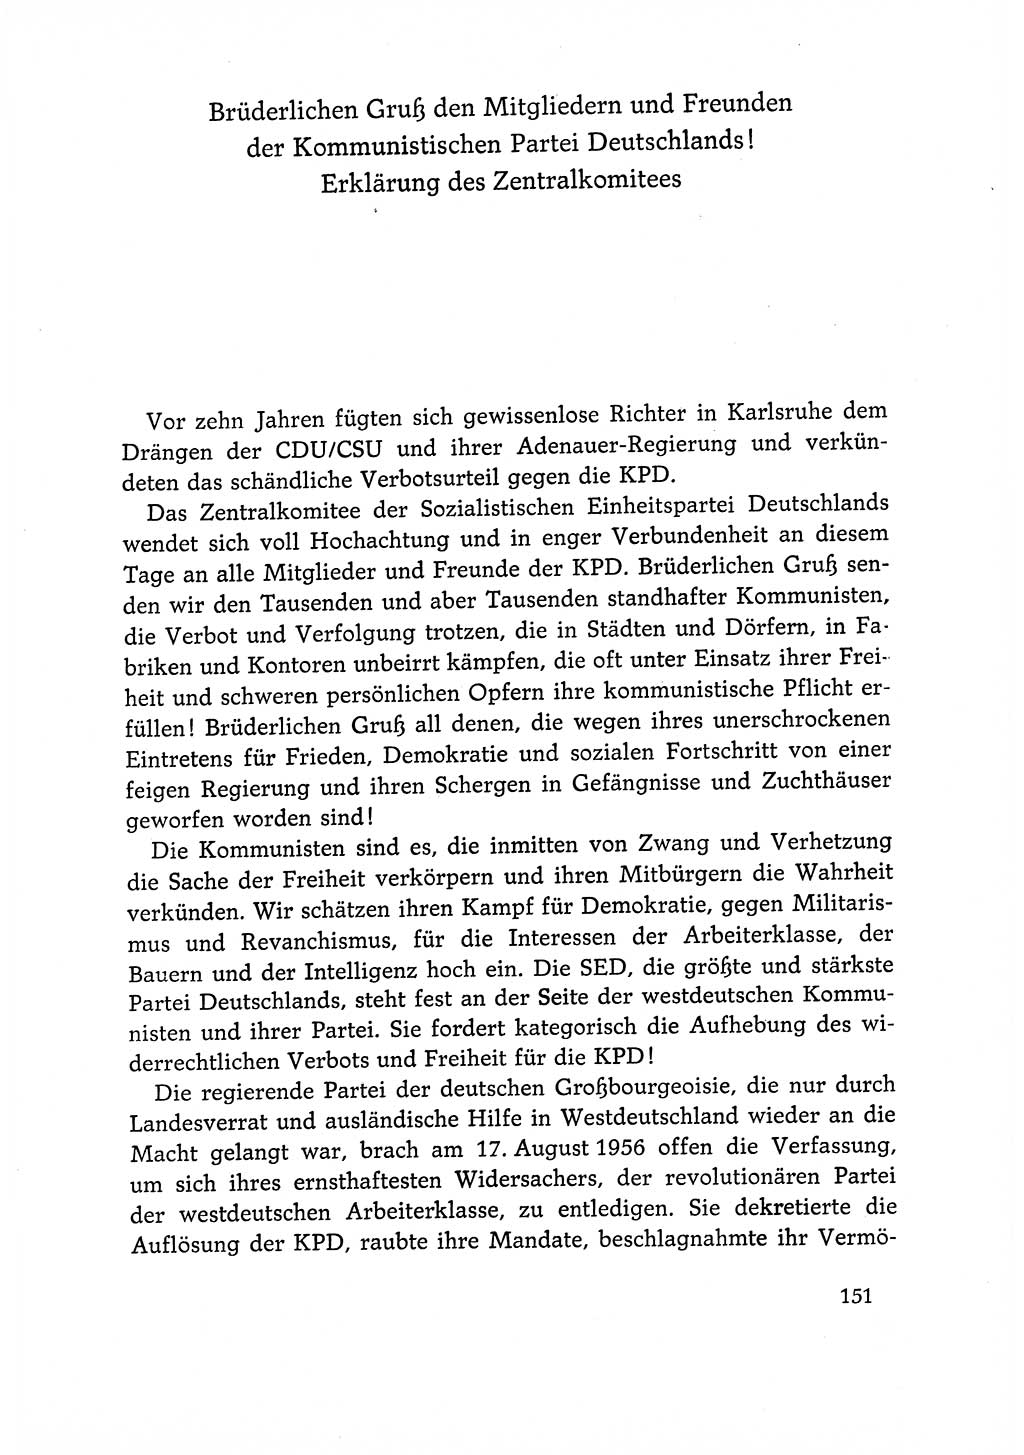 Dokumente der Sozialistischen Einheitspartei Deutschlands (SED) [Deutsche Demokratische Republik (DDR)] 1966-1967, Seite 151 (Dok. SED DDR 1966-1967, S. 151)